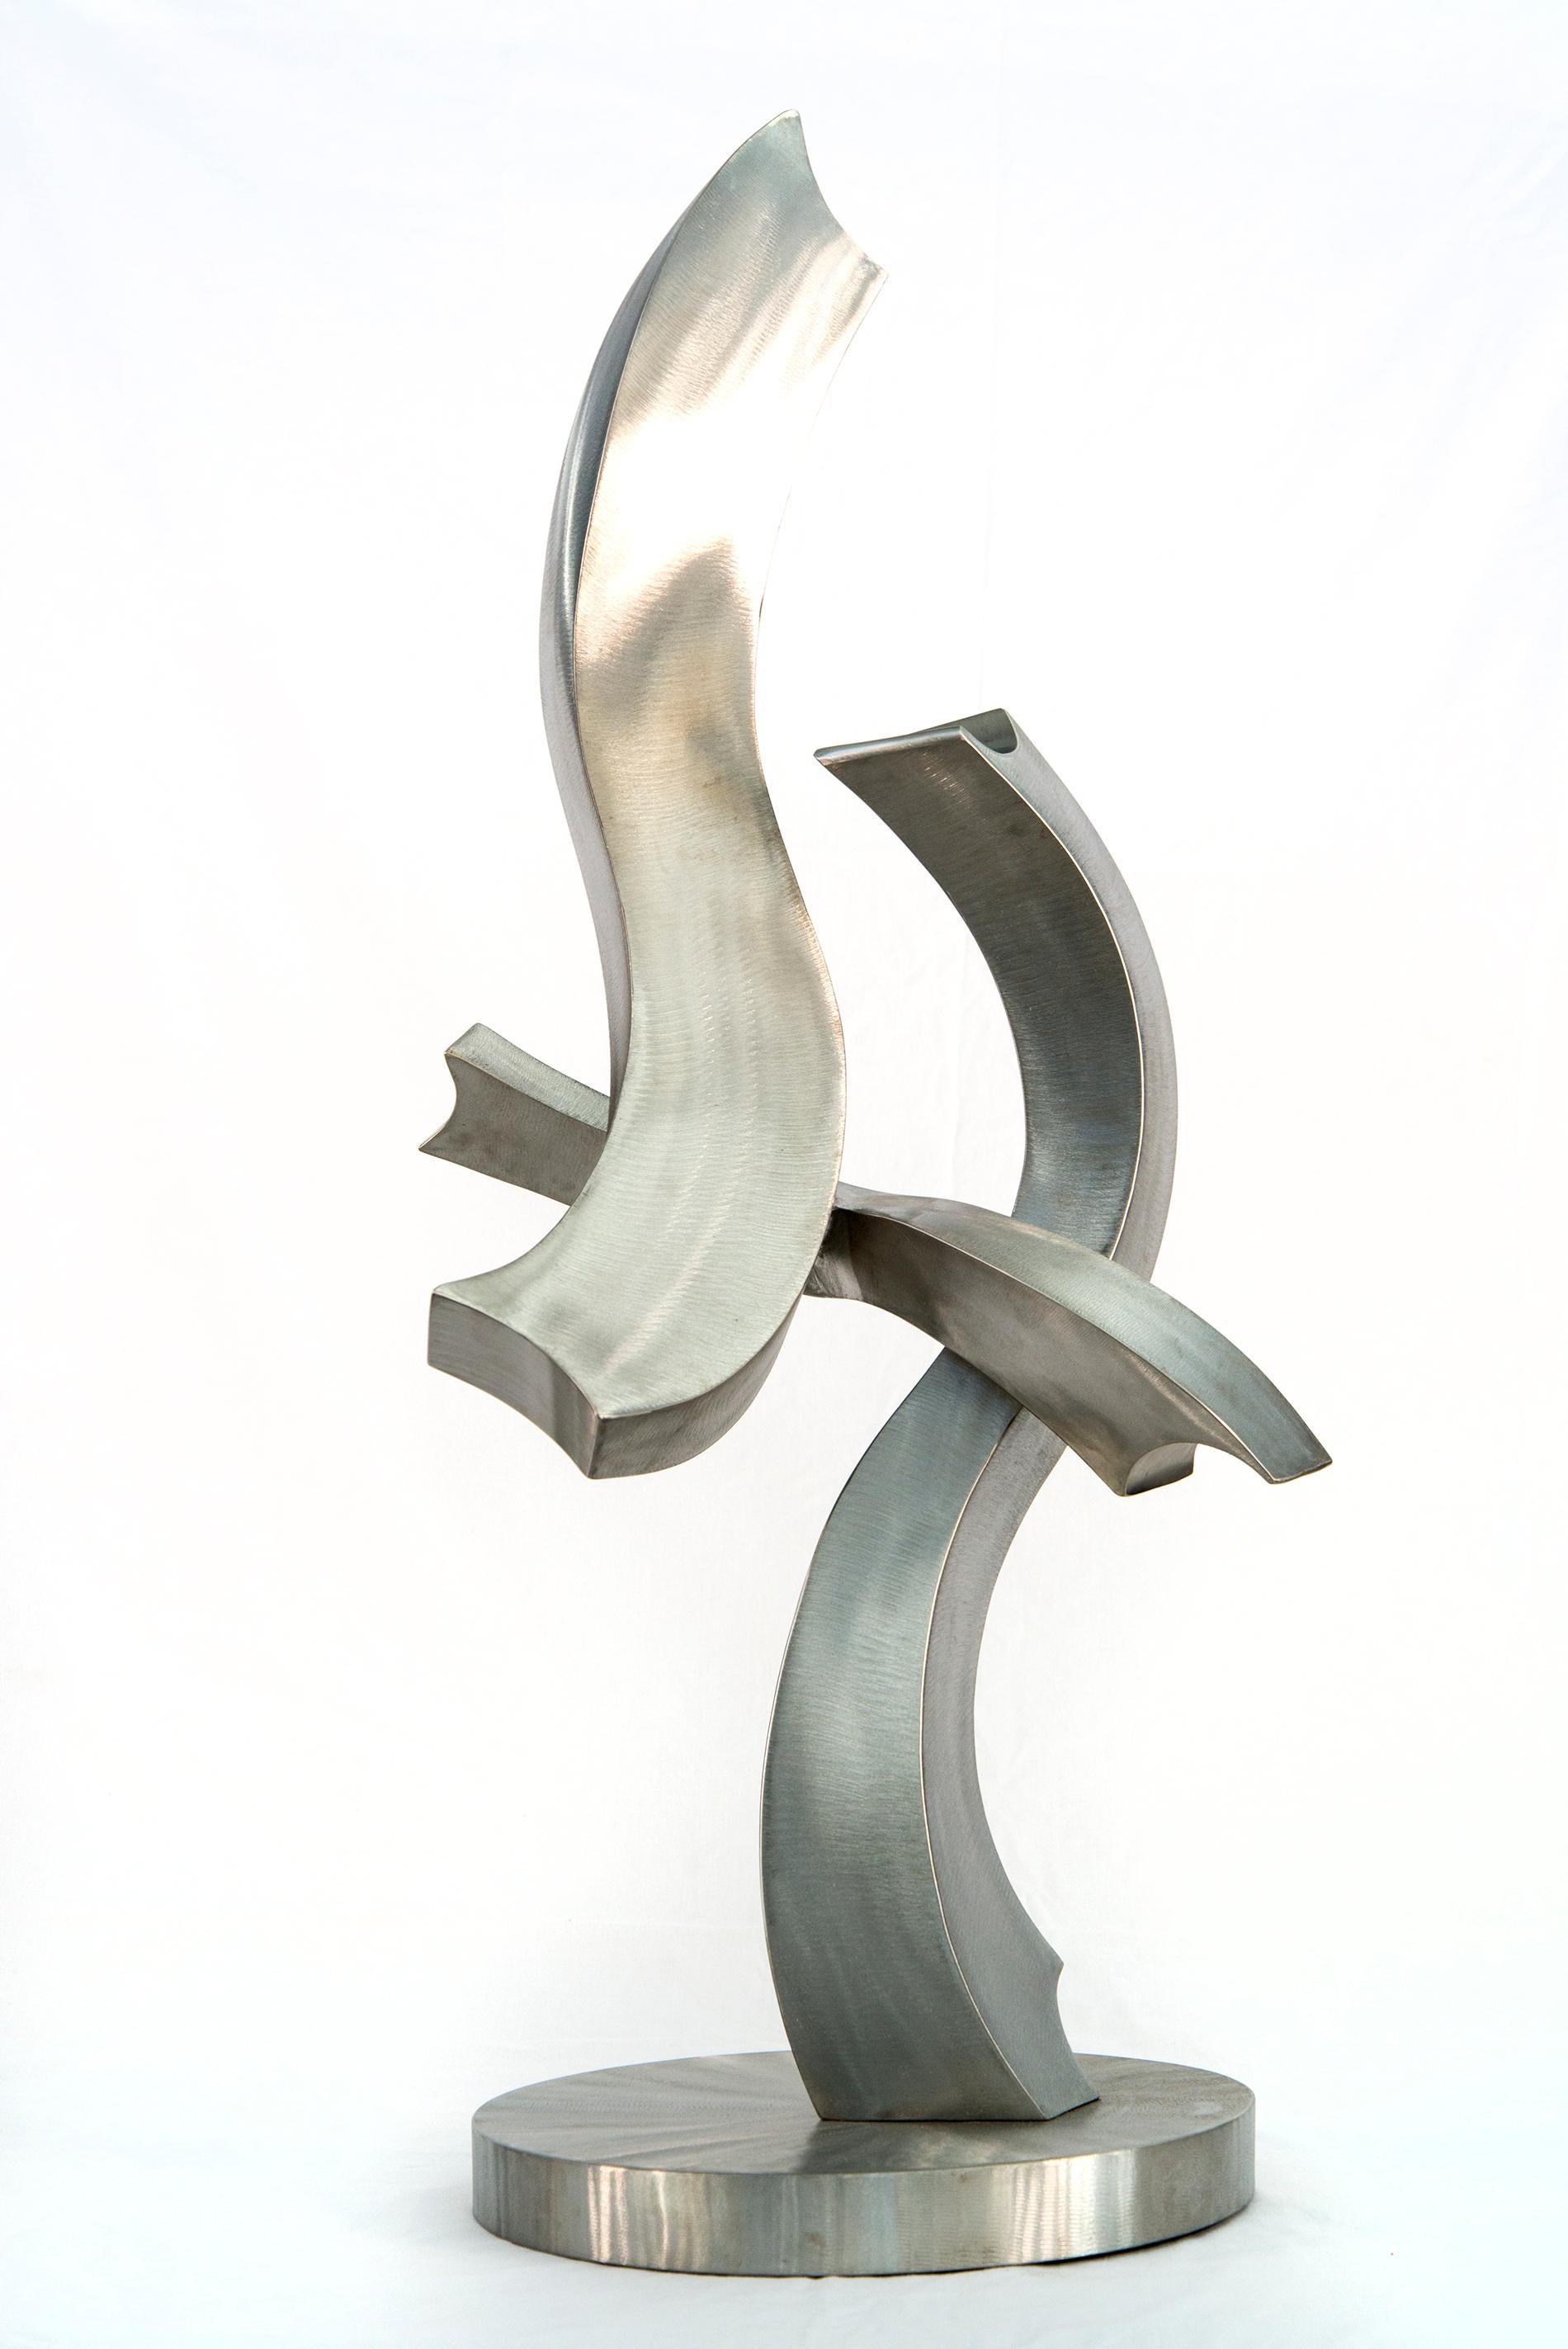 Abstract Sculpture Kevin Robb - Un coup de foudre d'éclat - sculpture contemporaine et abstraite en acier inoxydable forgé